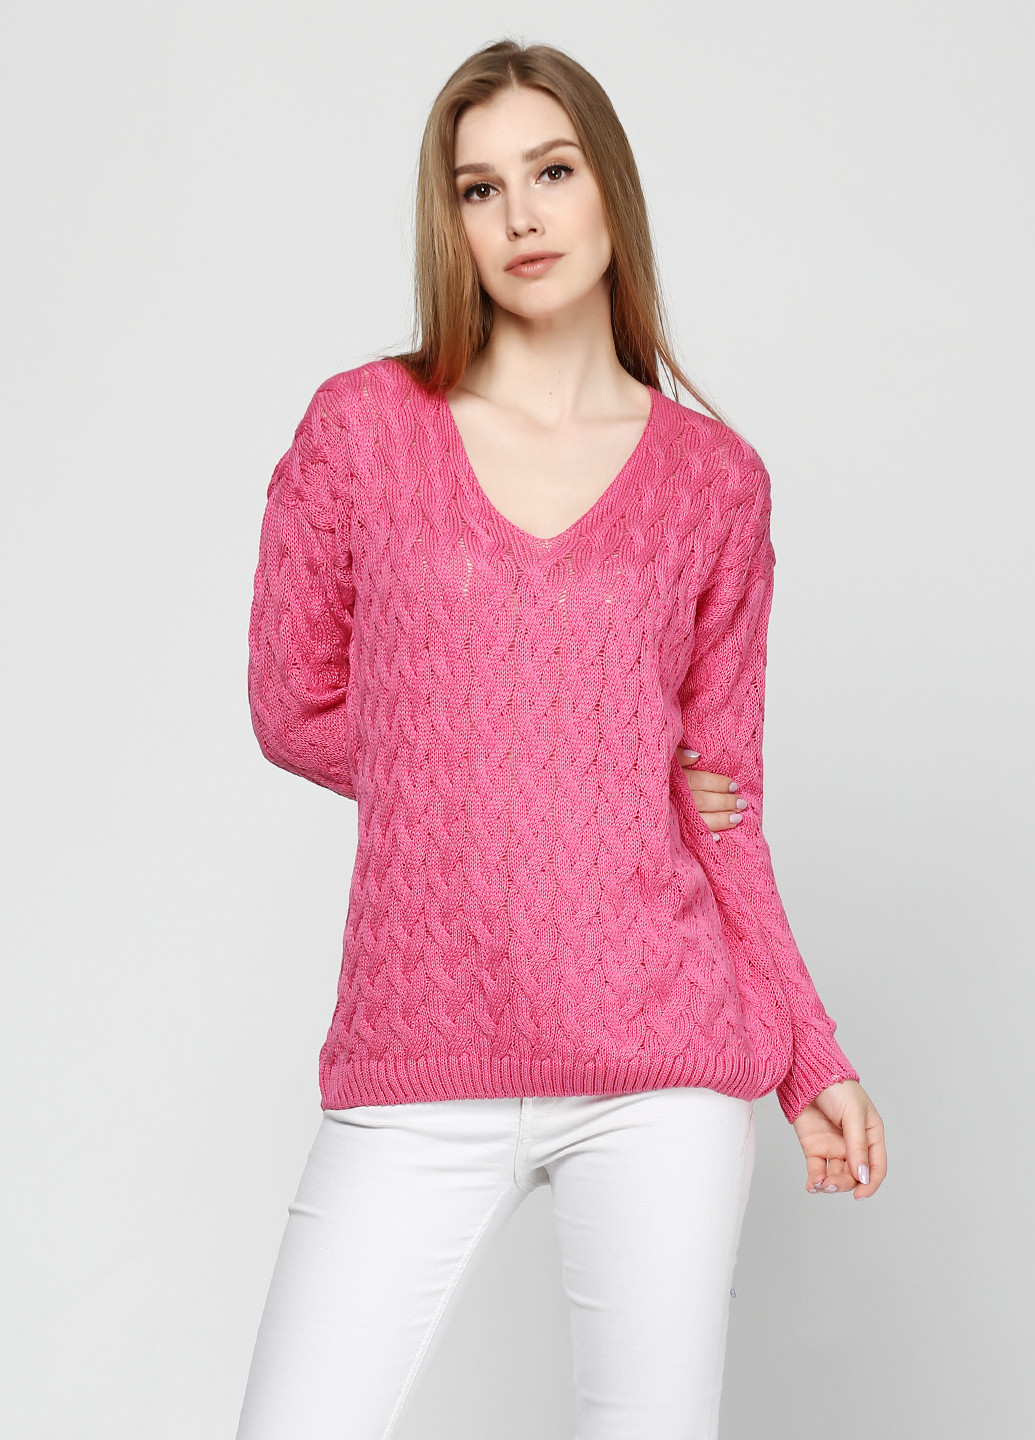 Малиновый демисезонный пуловер пуловер Zaldiz